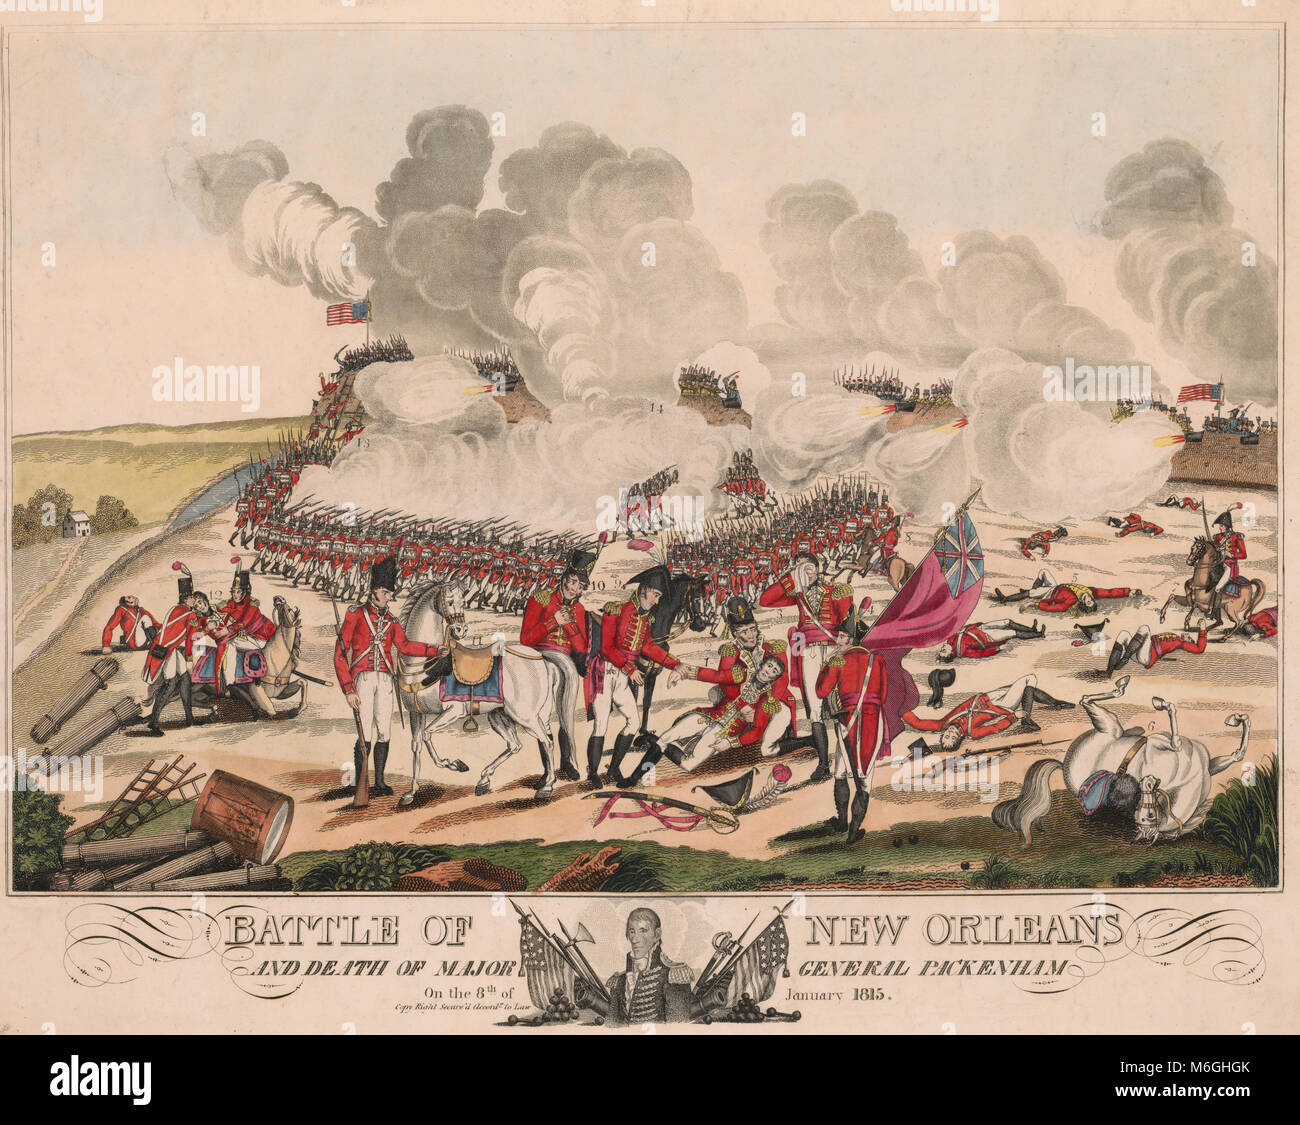 Bataille de La Nouvelle-Orléans et la mort du général Pakenham le 8 janvier 1815 - Bataille de la Nouvelle-Orléans de la perspective britannique, que les forces britanniques à l'avance sur les remblais des barricades ou à partir de laquelle les forces américaines, sous le commandement d'Andrew Jackson, repousser l'attaque. Inclut une remarque figurant en bas du centre qui montre une tête-et-épaules portrait d'Andrew Jackson, en face légèrement à gauche, avec des drapeaux américains et diverses armes. Des personnalités sont identifiés par un numéro dans l'impression, cependant, il n'y a pas de touche correspondante. Dans cette estampe, le général Lambert (no. 3) Banque D'Images